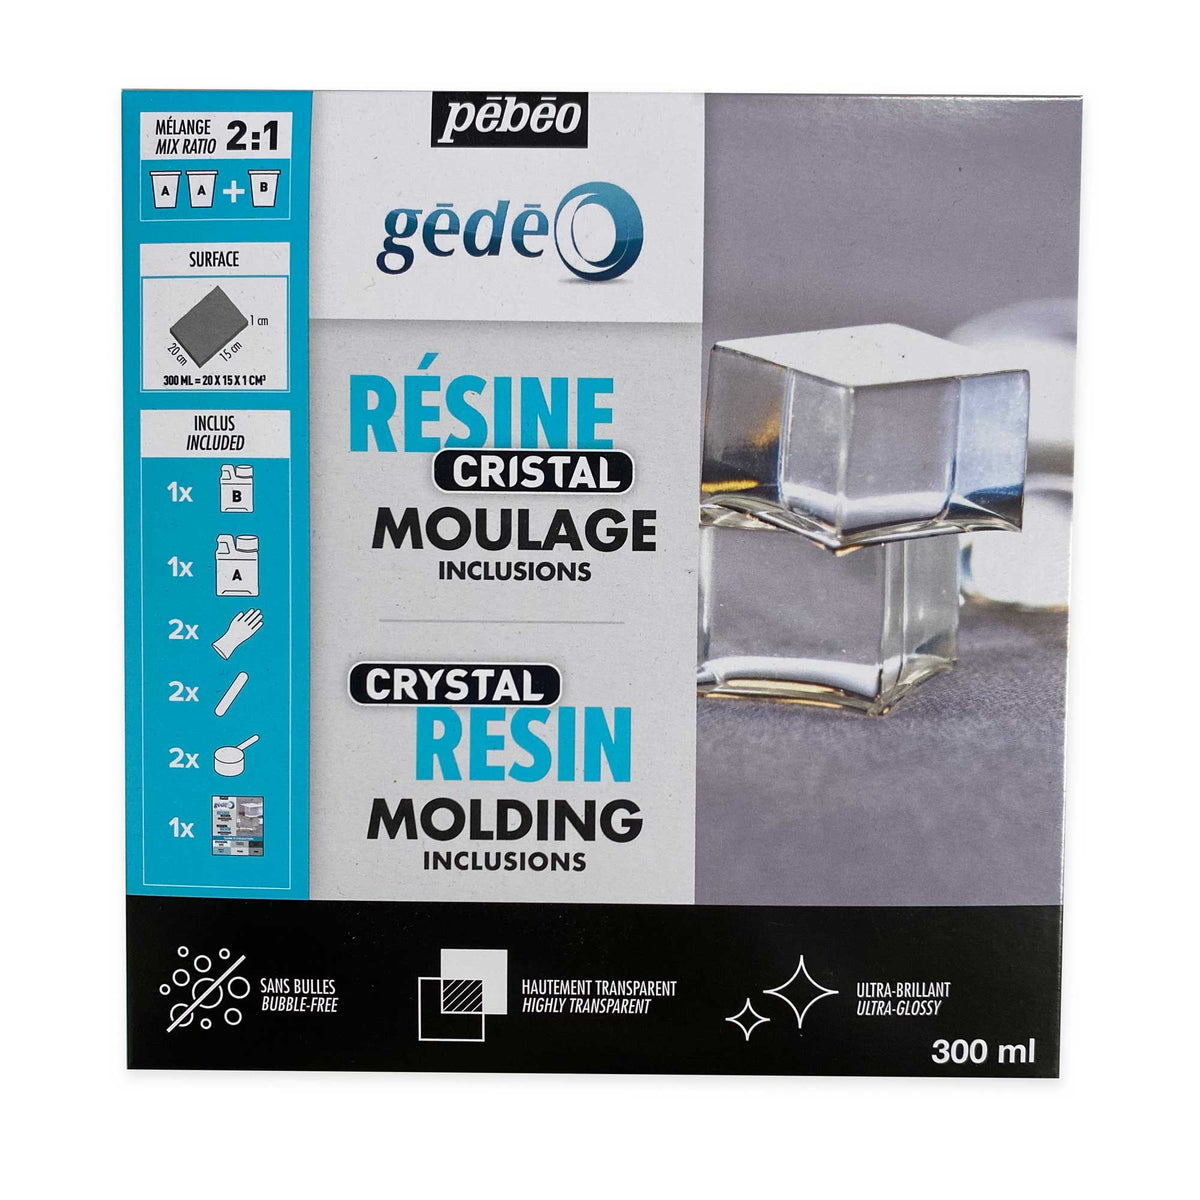 Pebeo Gedeo Crystal Resin - 300ml Set Box